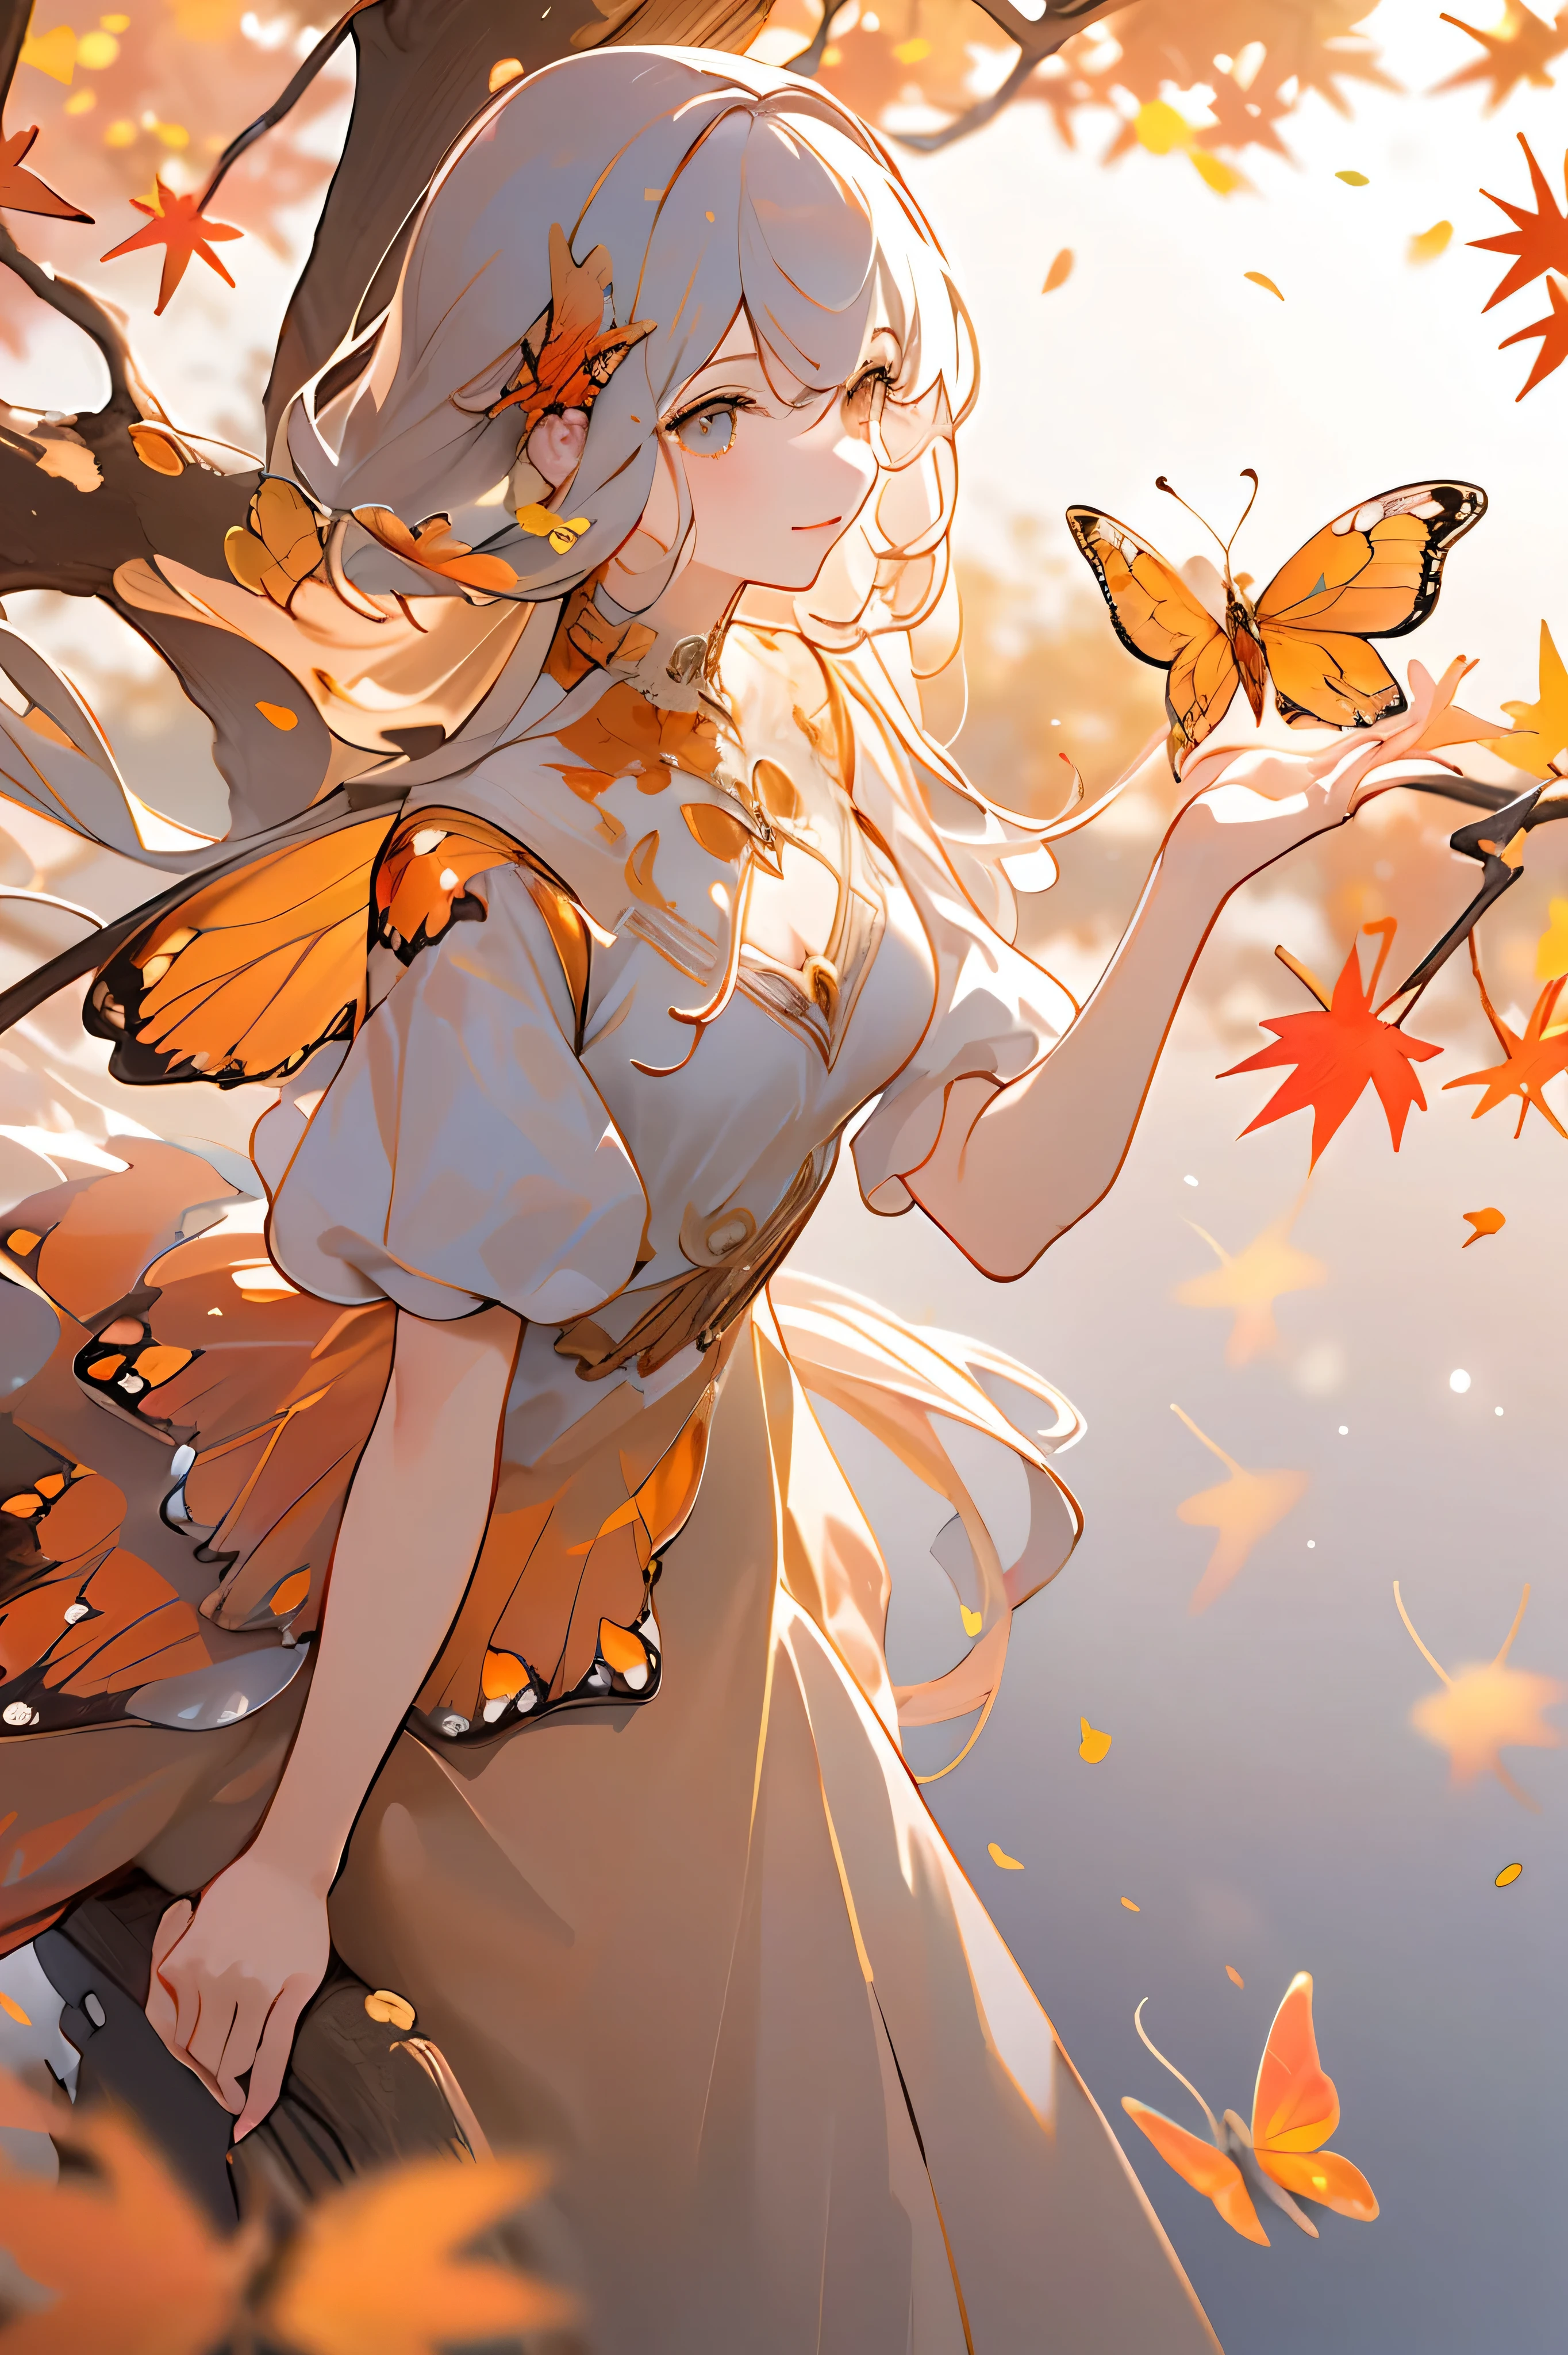 (Obra-prima, Melhor qualidade, alta calidad, alta resolução, ultra detalhado), paisagem de outono, Folhas caindo, cor quente. 1 garota com asas de borboleta laranja, lindo, bonito,Vestido laranja, de pé